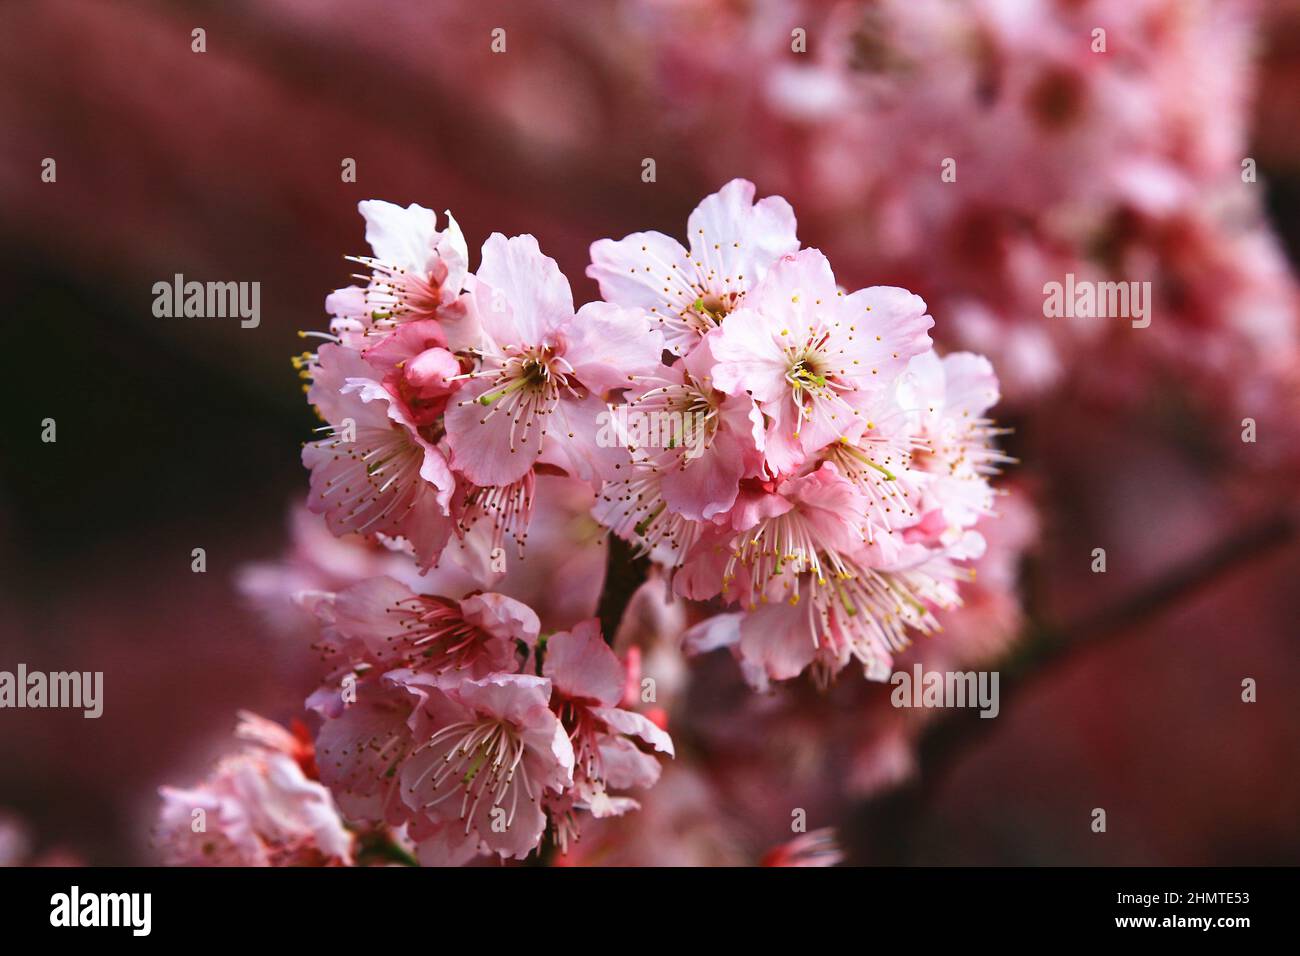 Vista incredibile dei fiori di fiori di ciliegia in fiore, primo piano di rosa con fiori di ciliegia bianca in fiore nel giardino in primavera Foto Stock